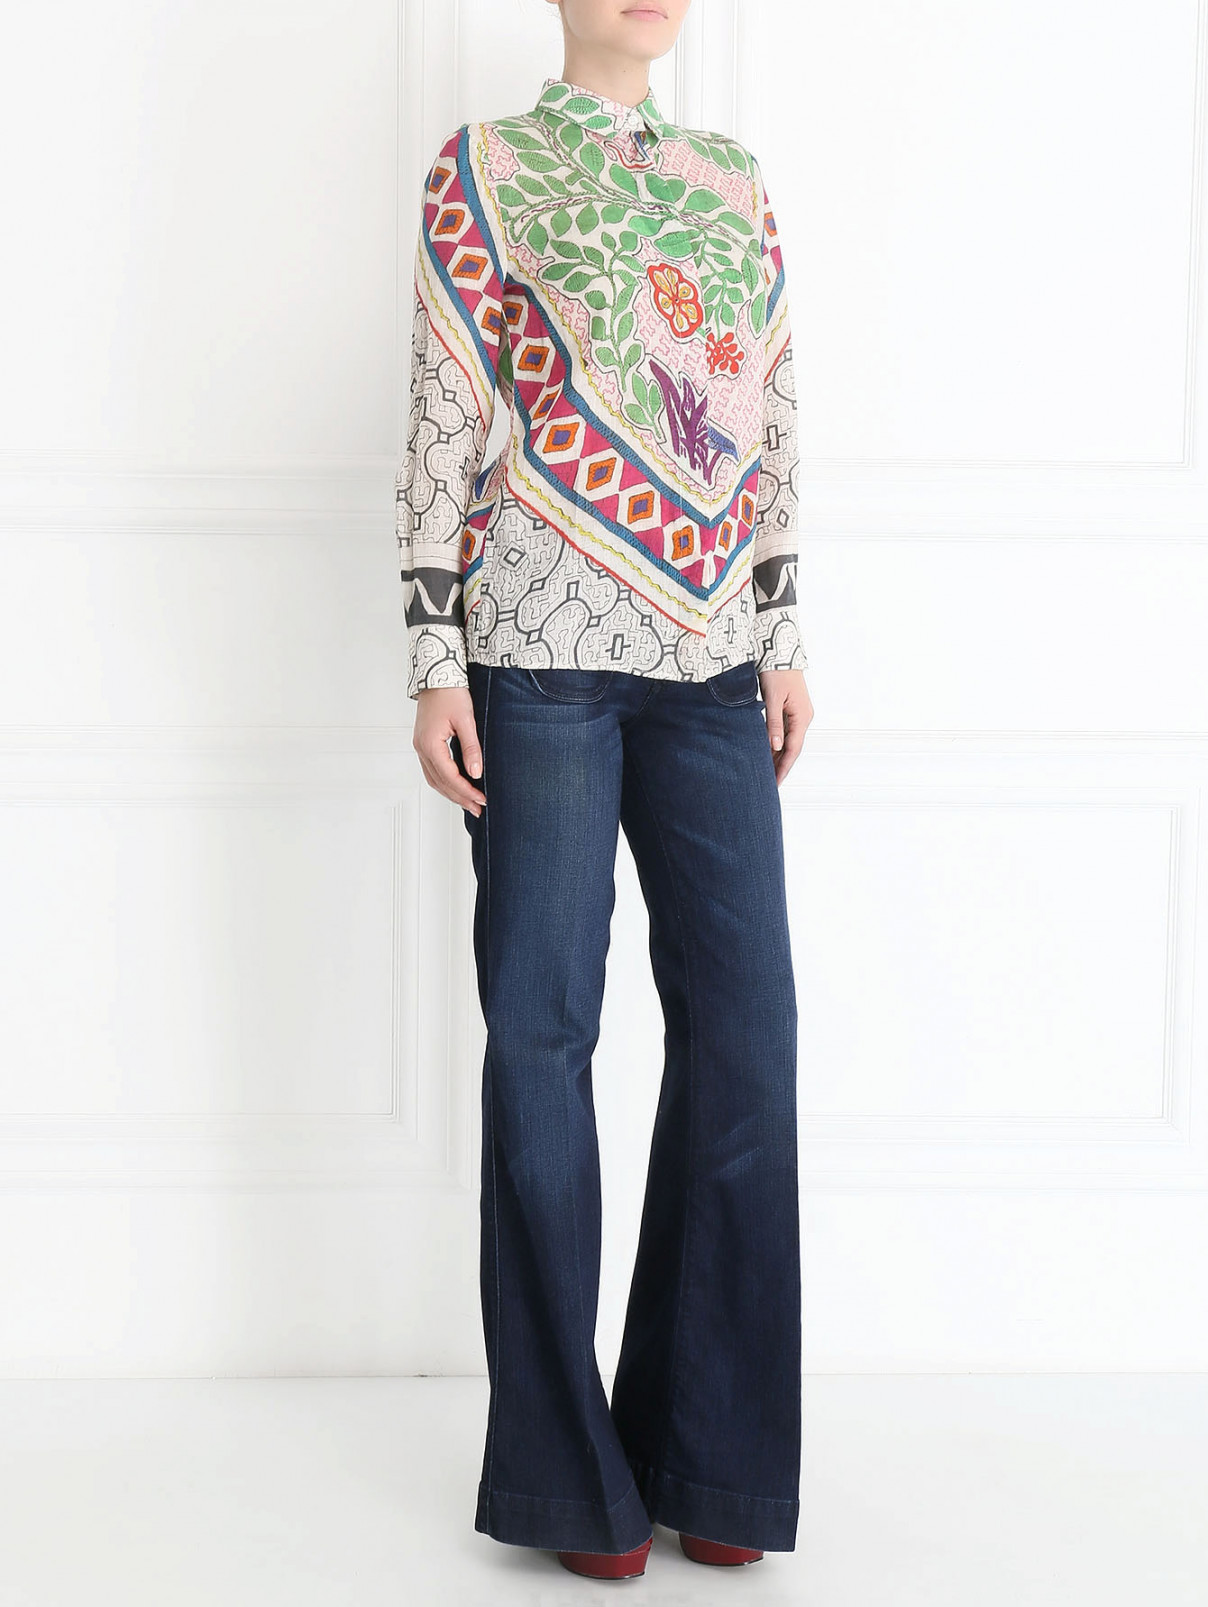 Блуза с узором "цветы" Barbara Bui  –  Модель Общий вид  – Цвет:  Узор